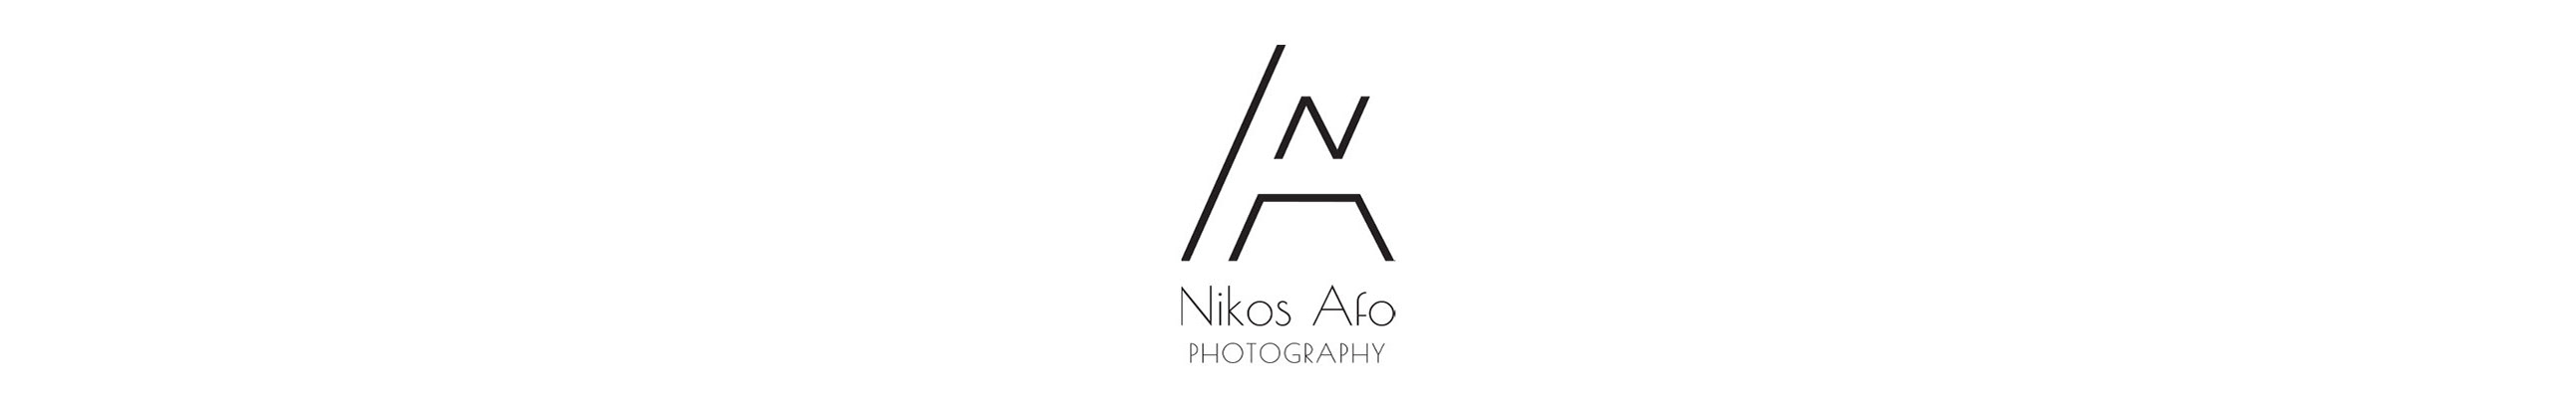 Nikos Afo 的個人檔案橫幅